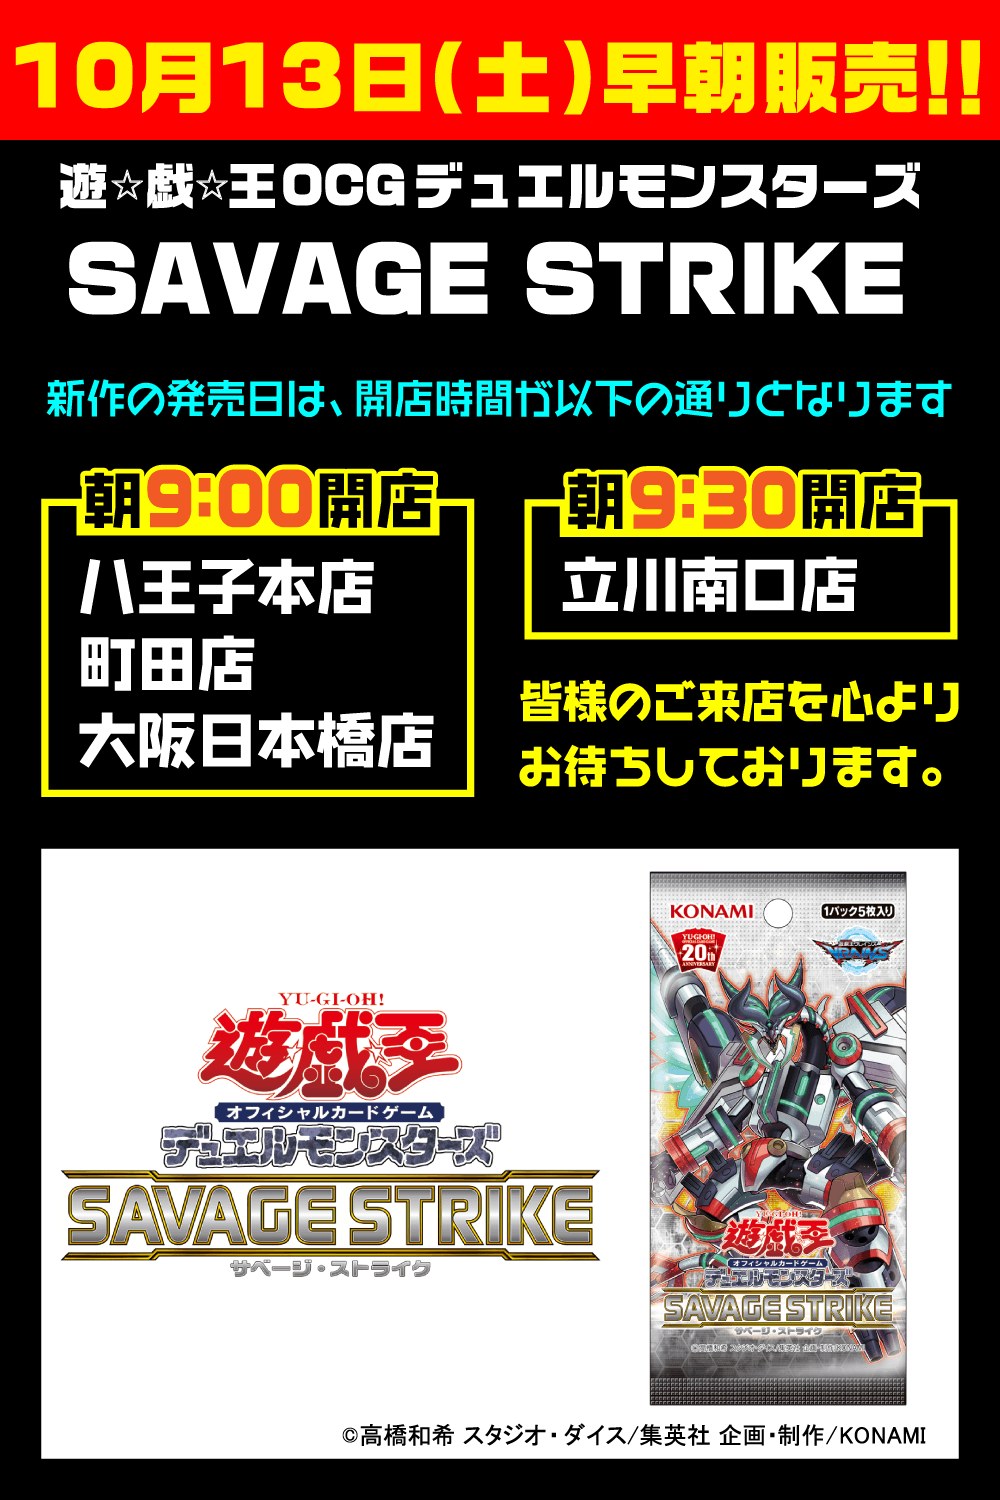 遊戯王「SAVAGE STRIKE」早朝販売